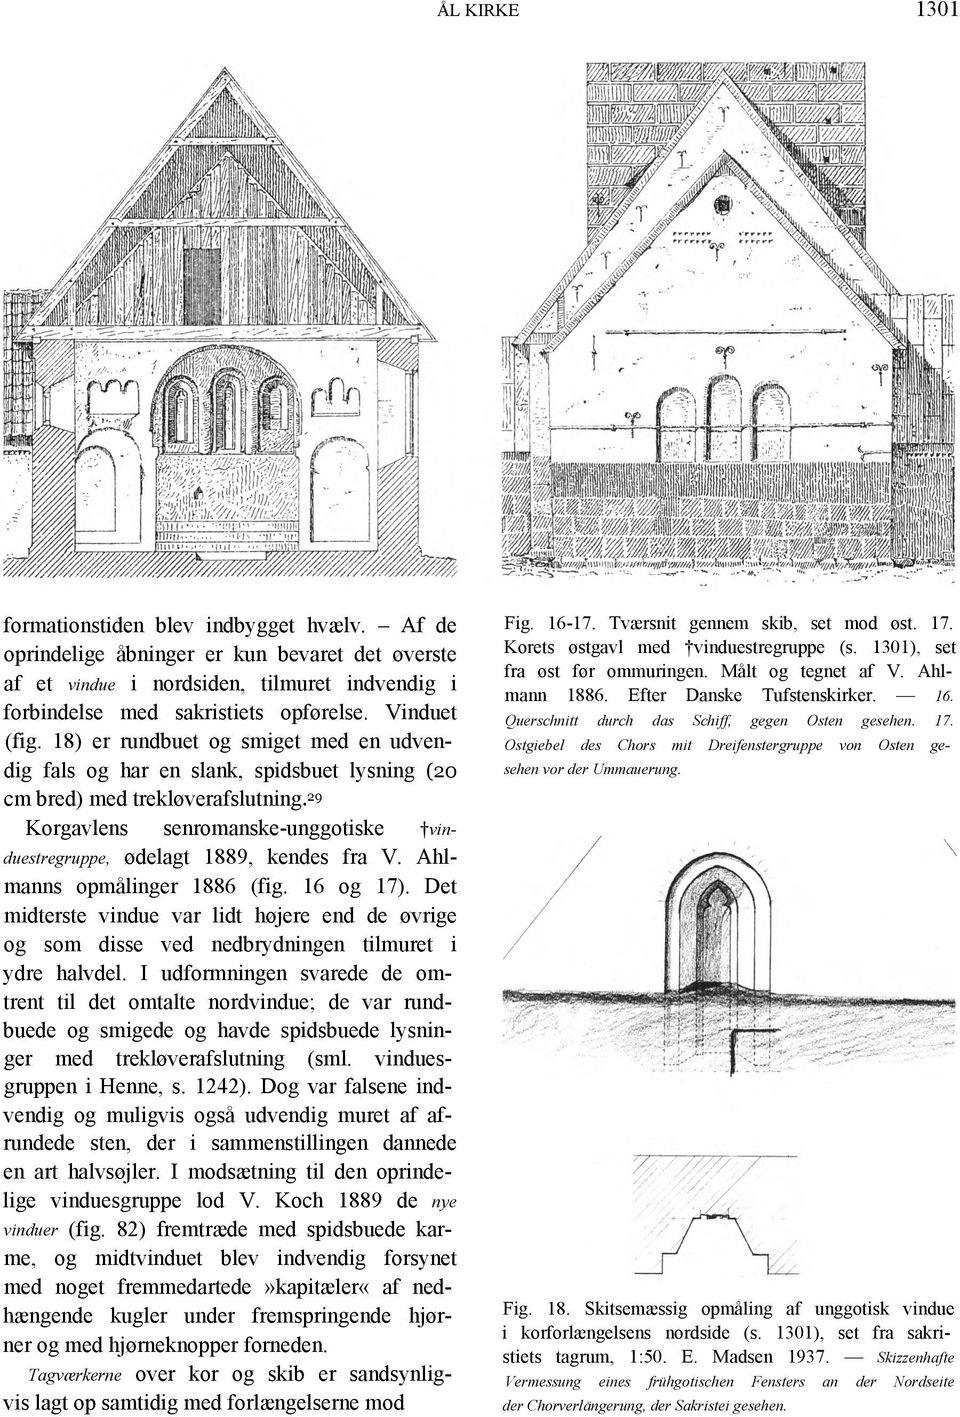 29 Korgavlens senromanske-unggotiske vinduestregruppe, ødelagt 1889, kendes fra V. Ahlmanns opmålinger 1886 (fig. 16 og 17).